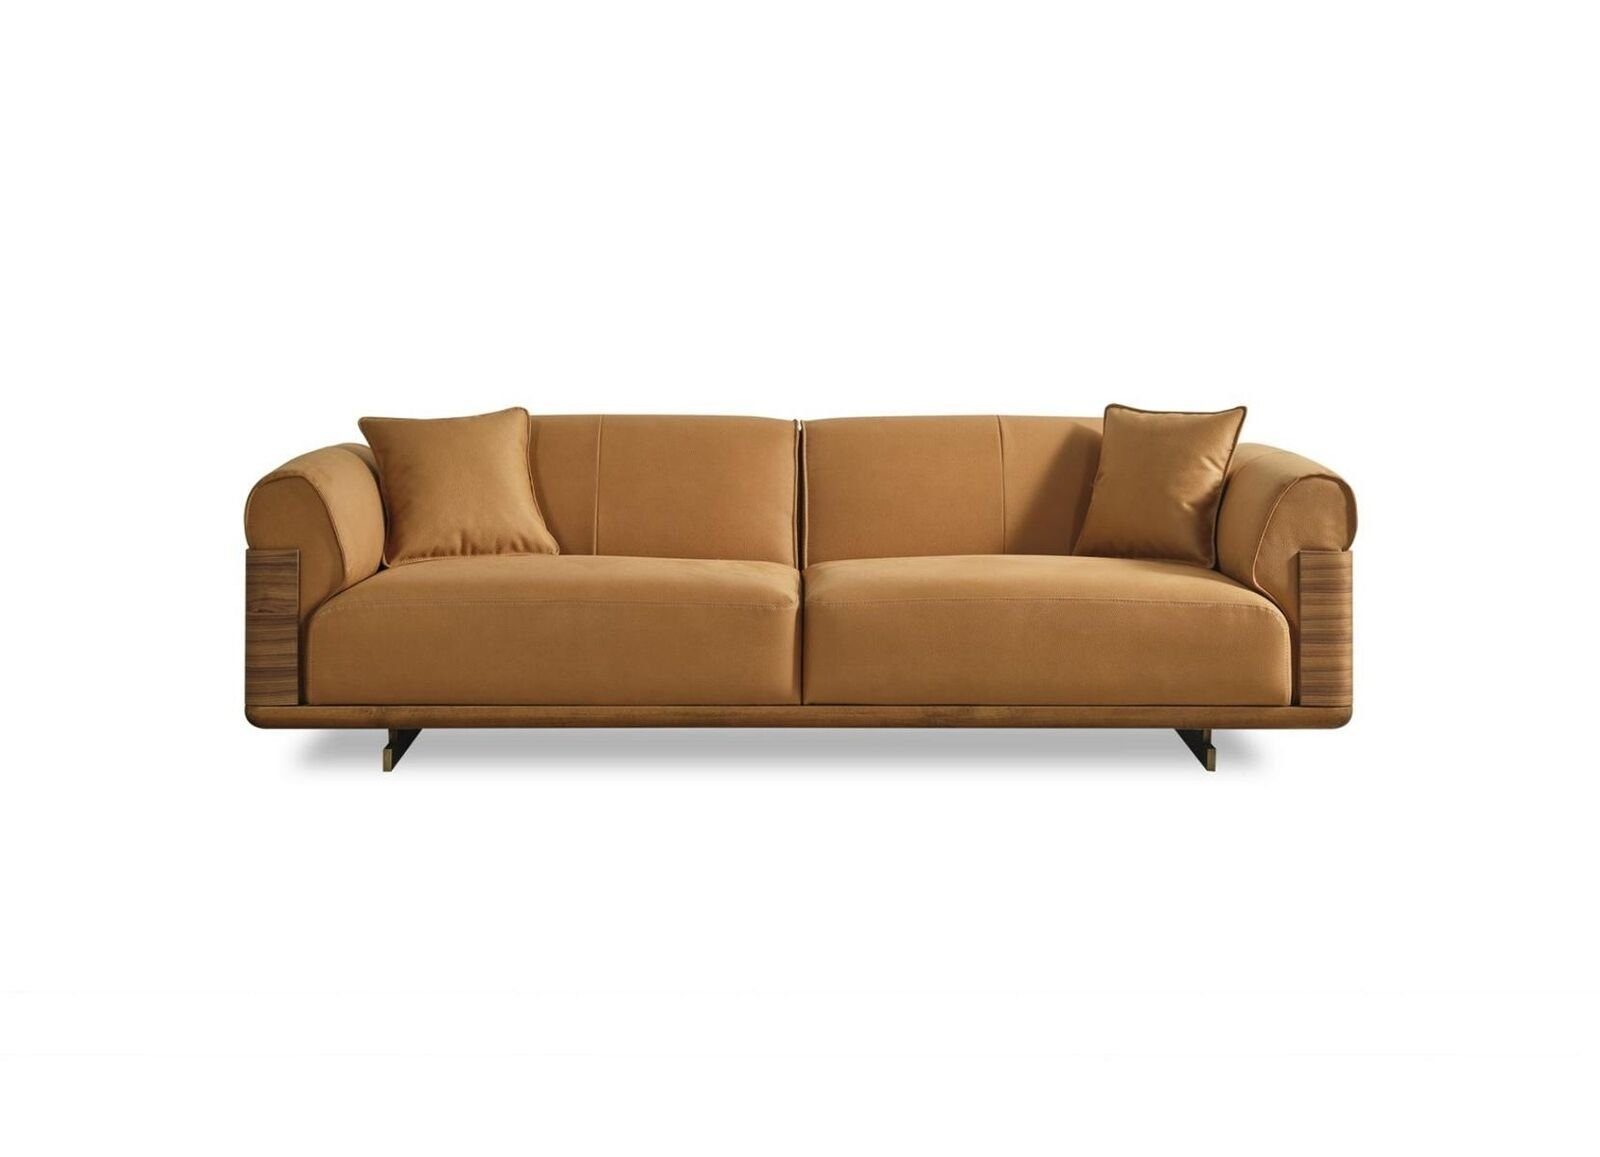 JVmoebel 3-Sitzer Sofa Dreisitzer 3 Sitzer Polstersofa Braun Stoff Polyester Couch, 1 Teile, Made in Europa